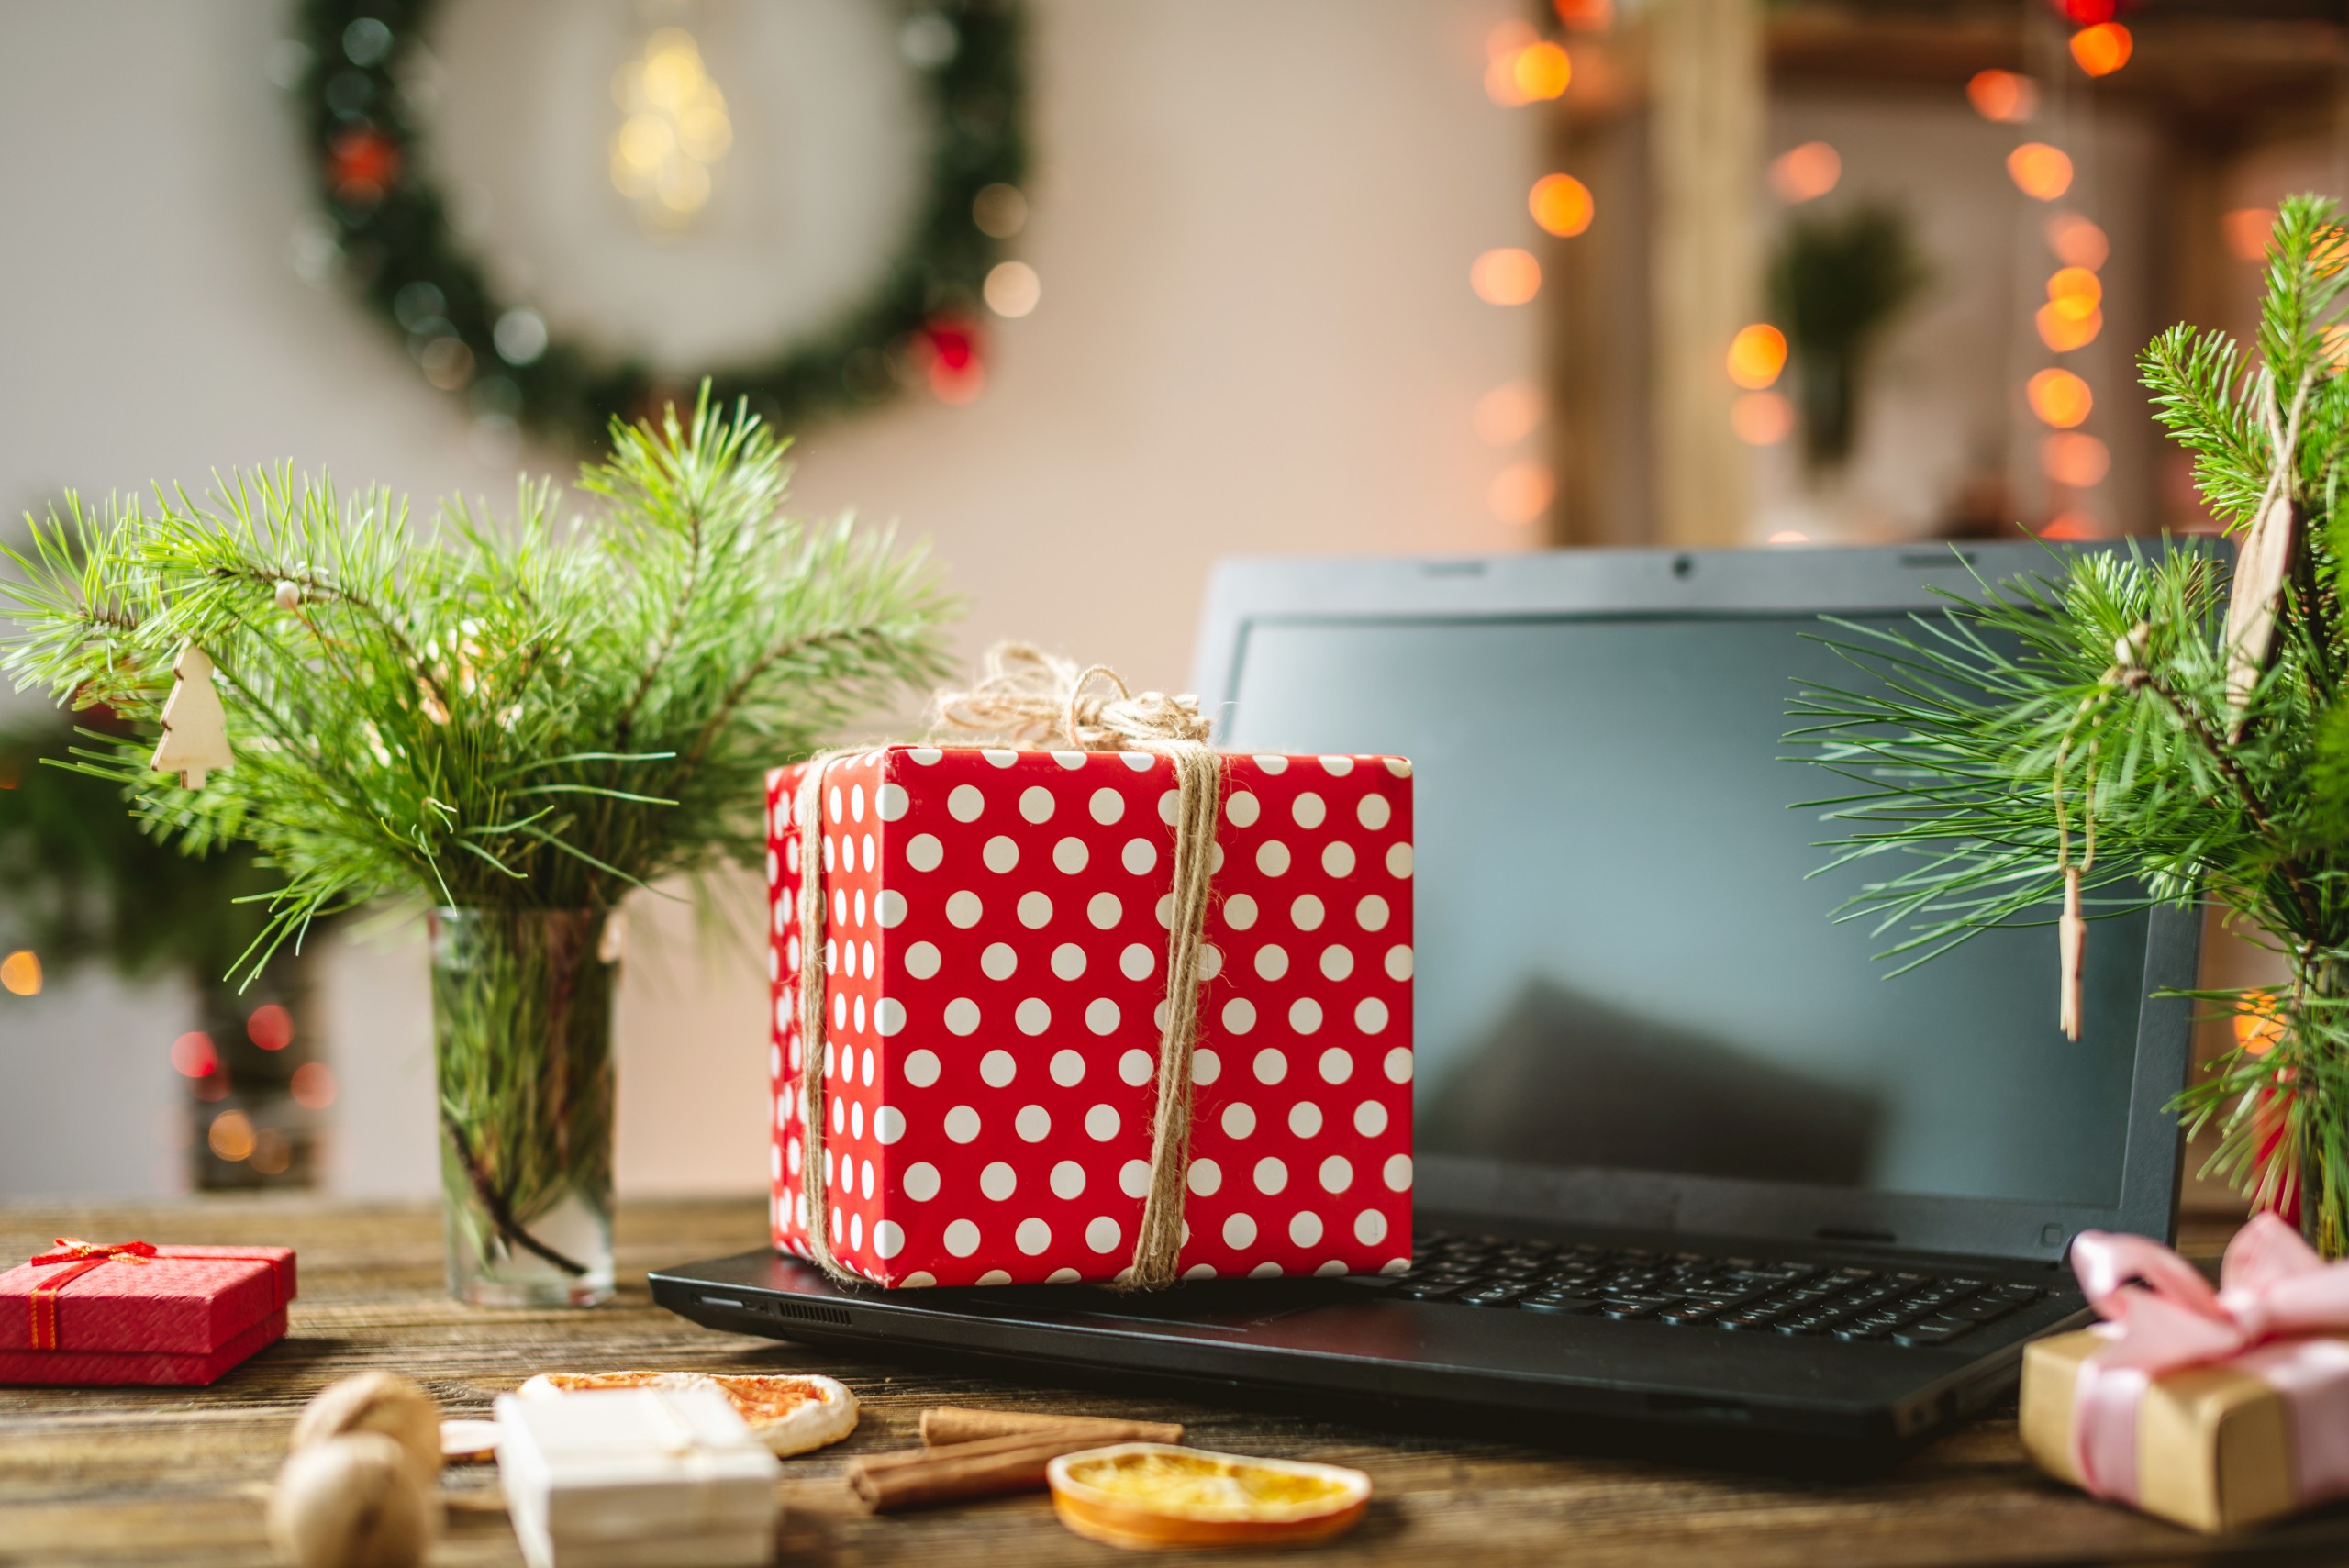 ecommerce holiday season laptop